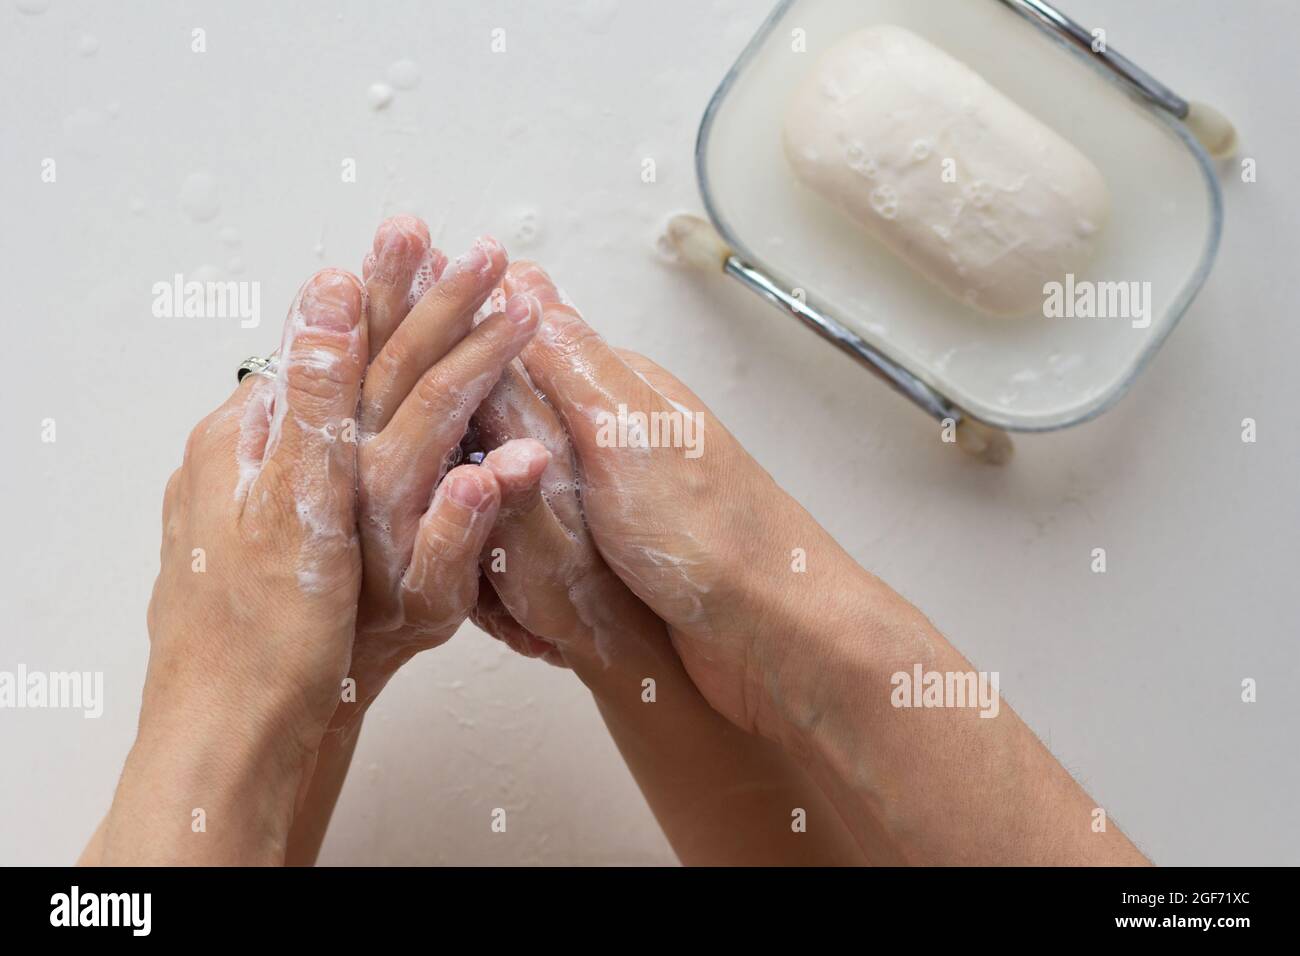 Vista dall'alto delle mani della donna che insaporite le mani del bambino con sapone su sfondo bianco Foto Stock